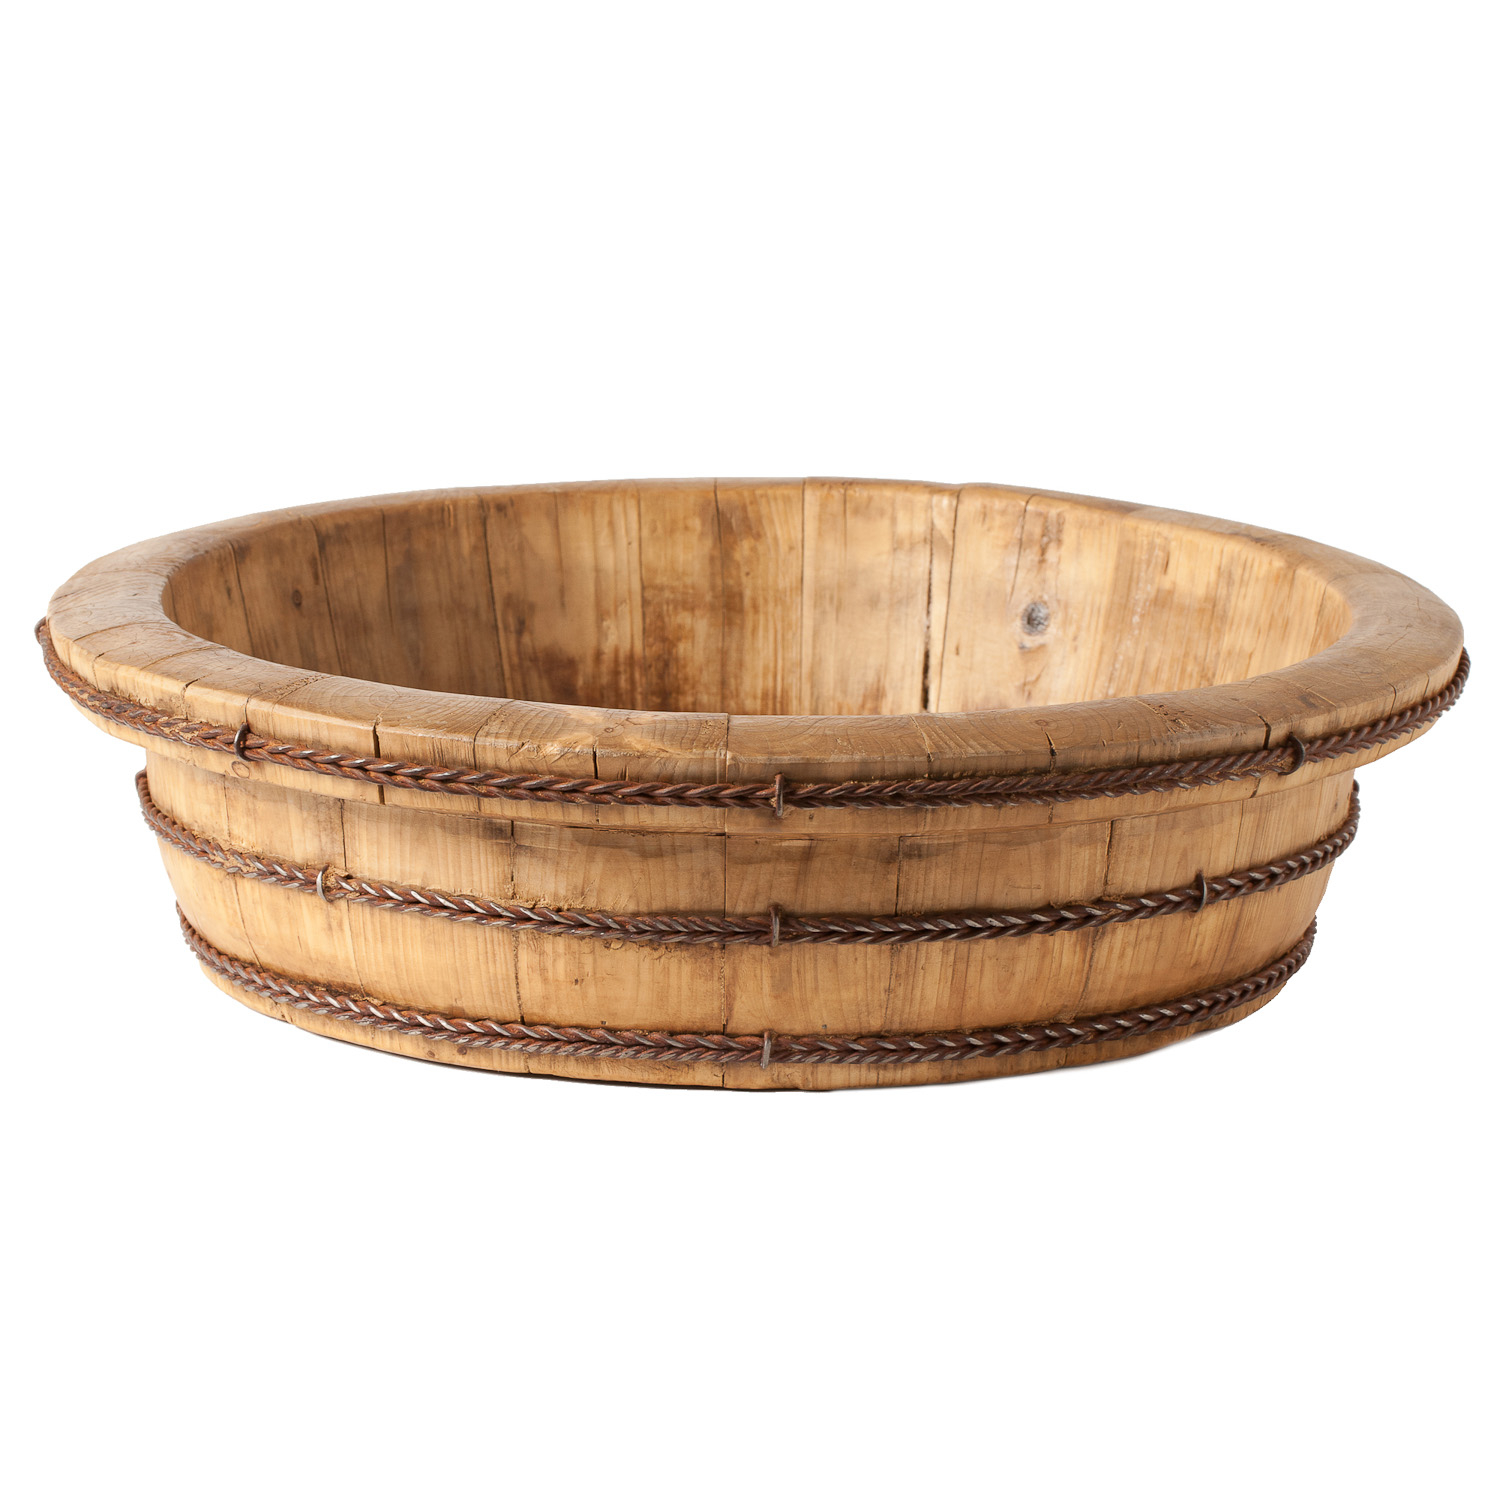 Rustic Wooden Bowl | Gump's